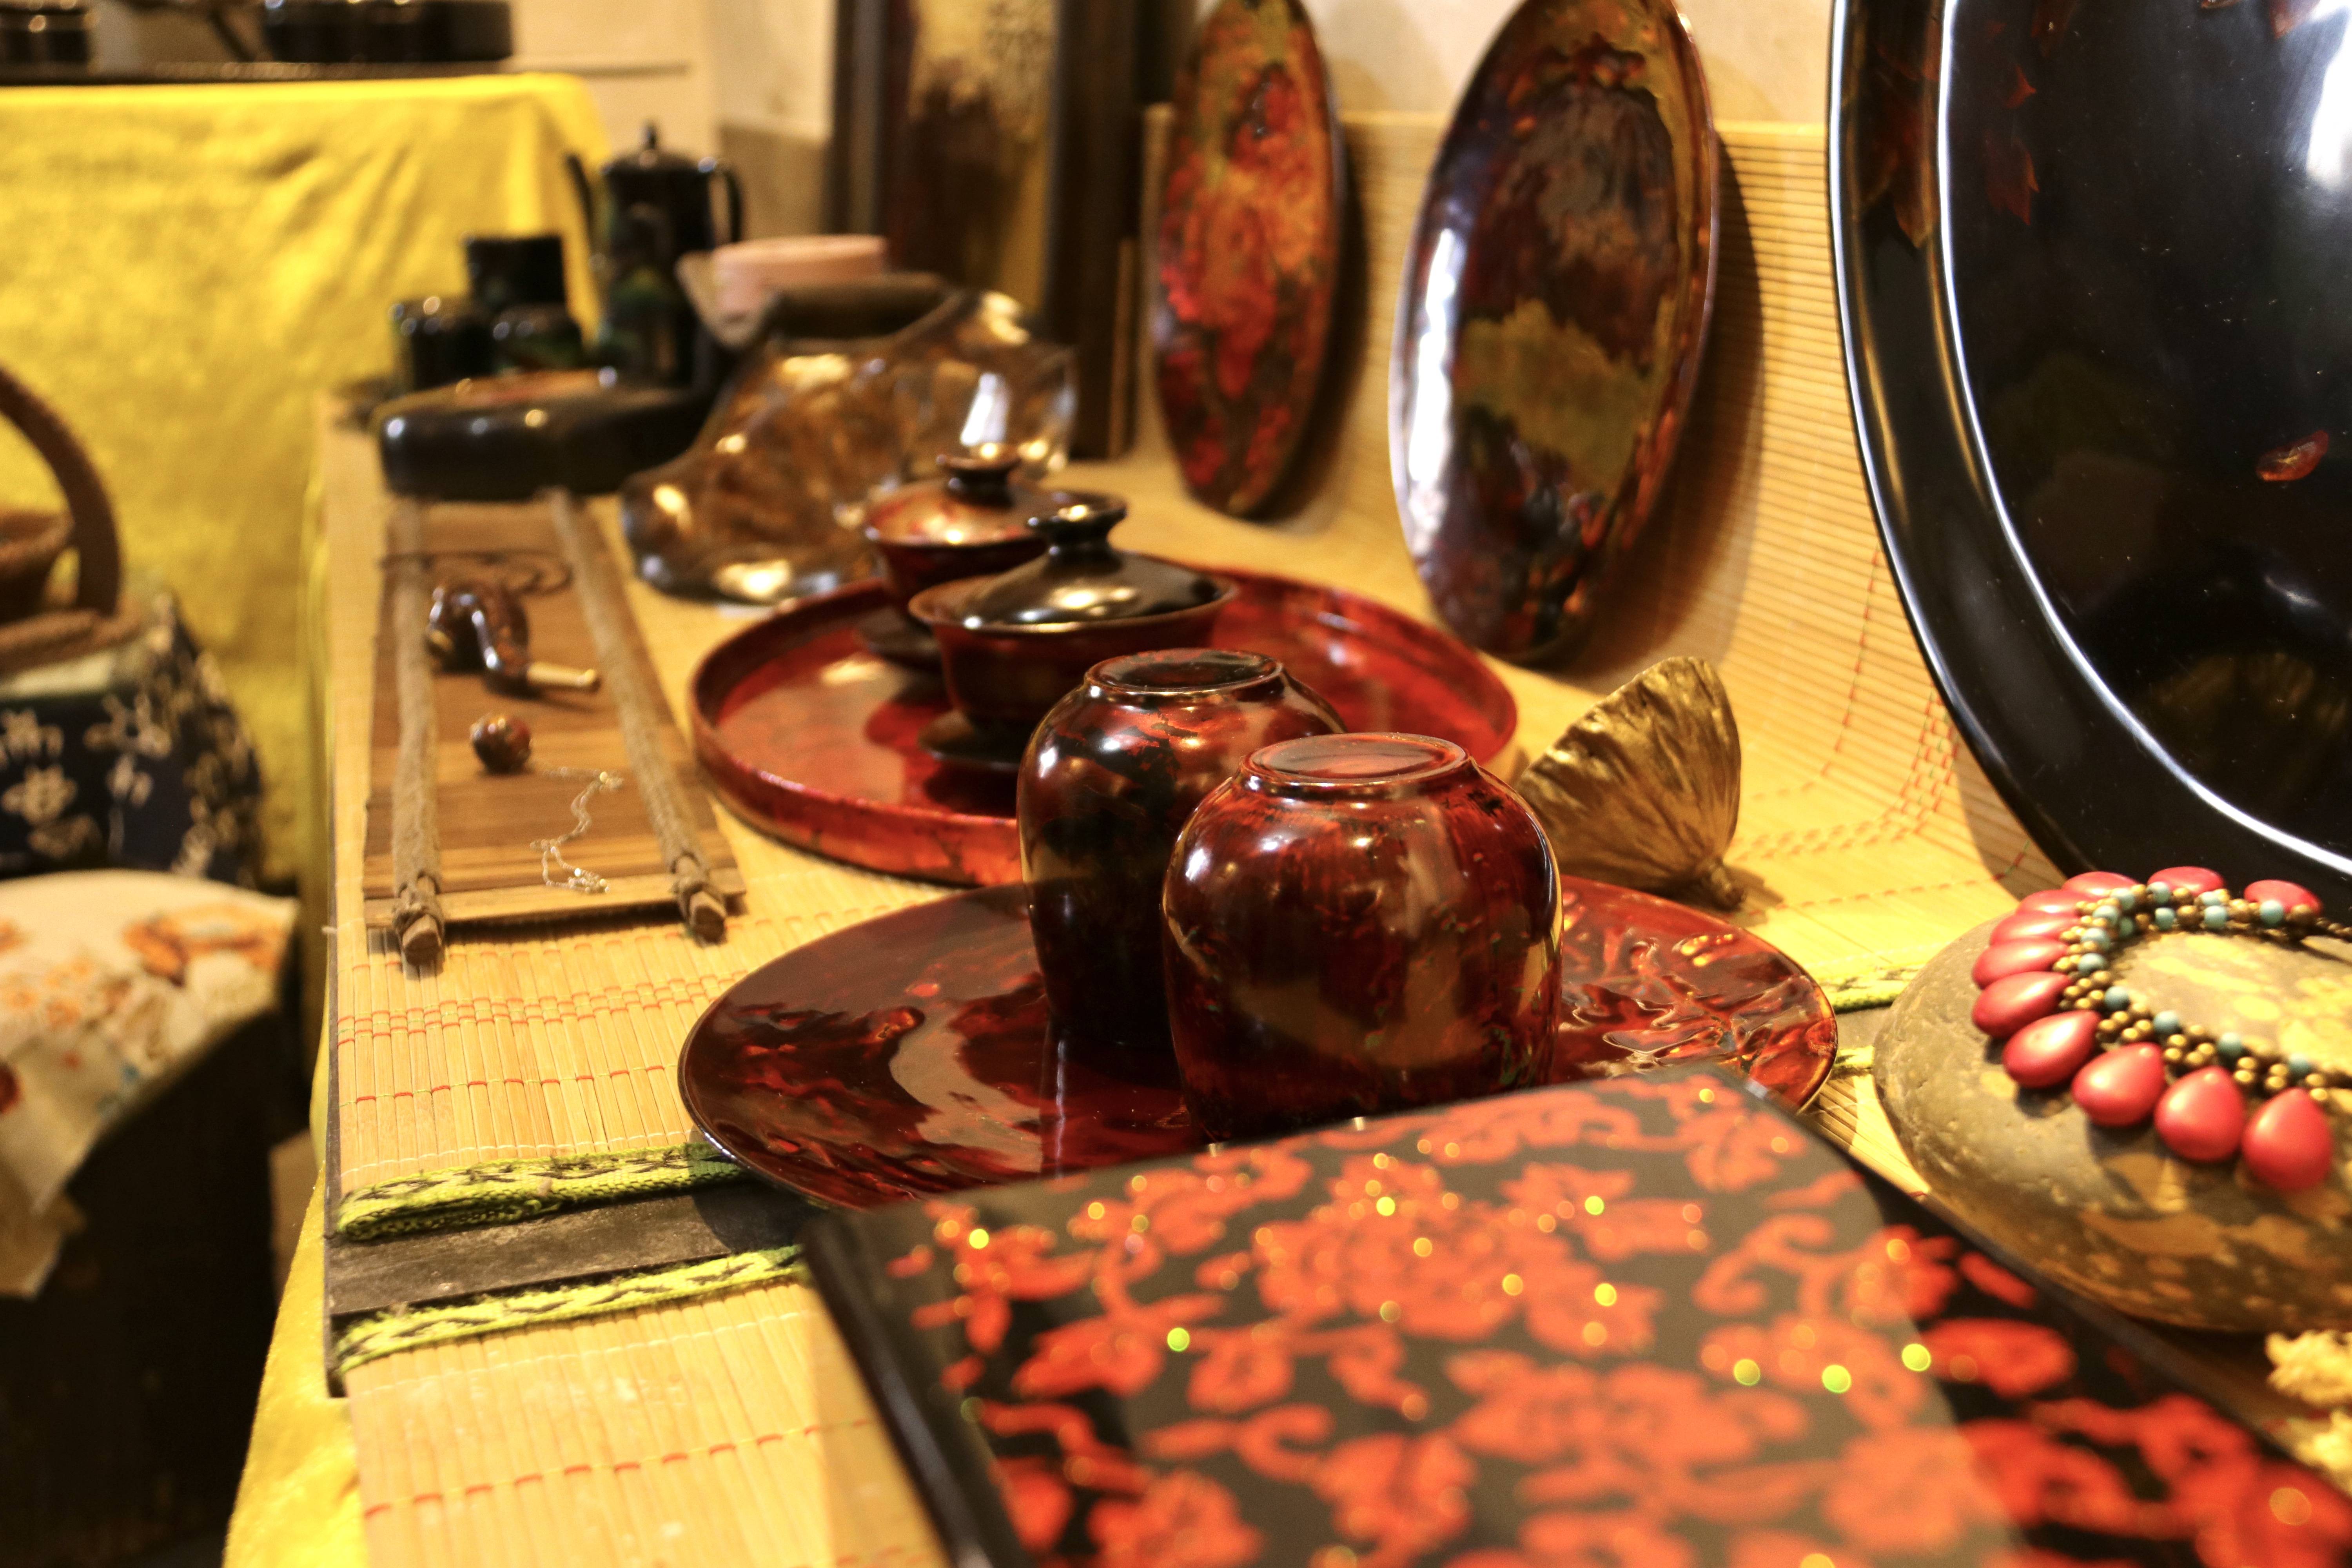 重庆漆艺第六代市级传承人陈芷月的漆艺工作室里,陈列着她制作的漆器